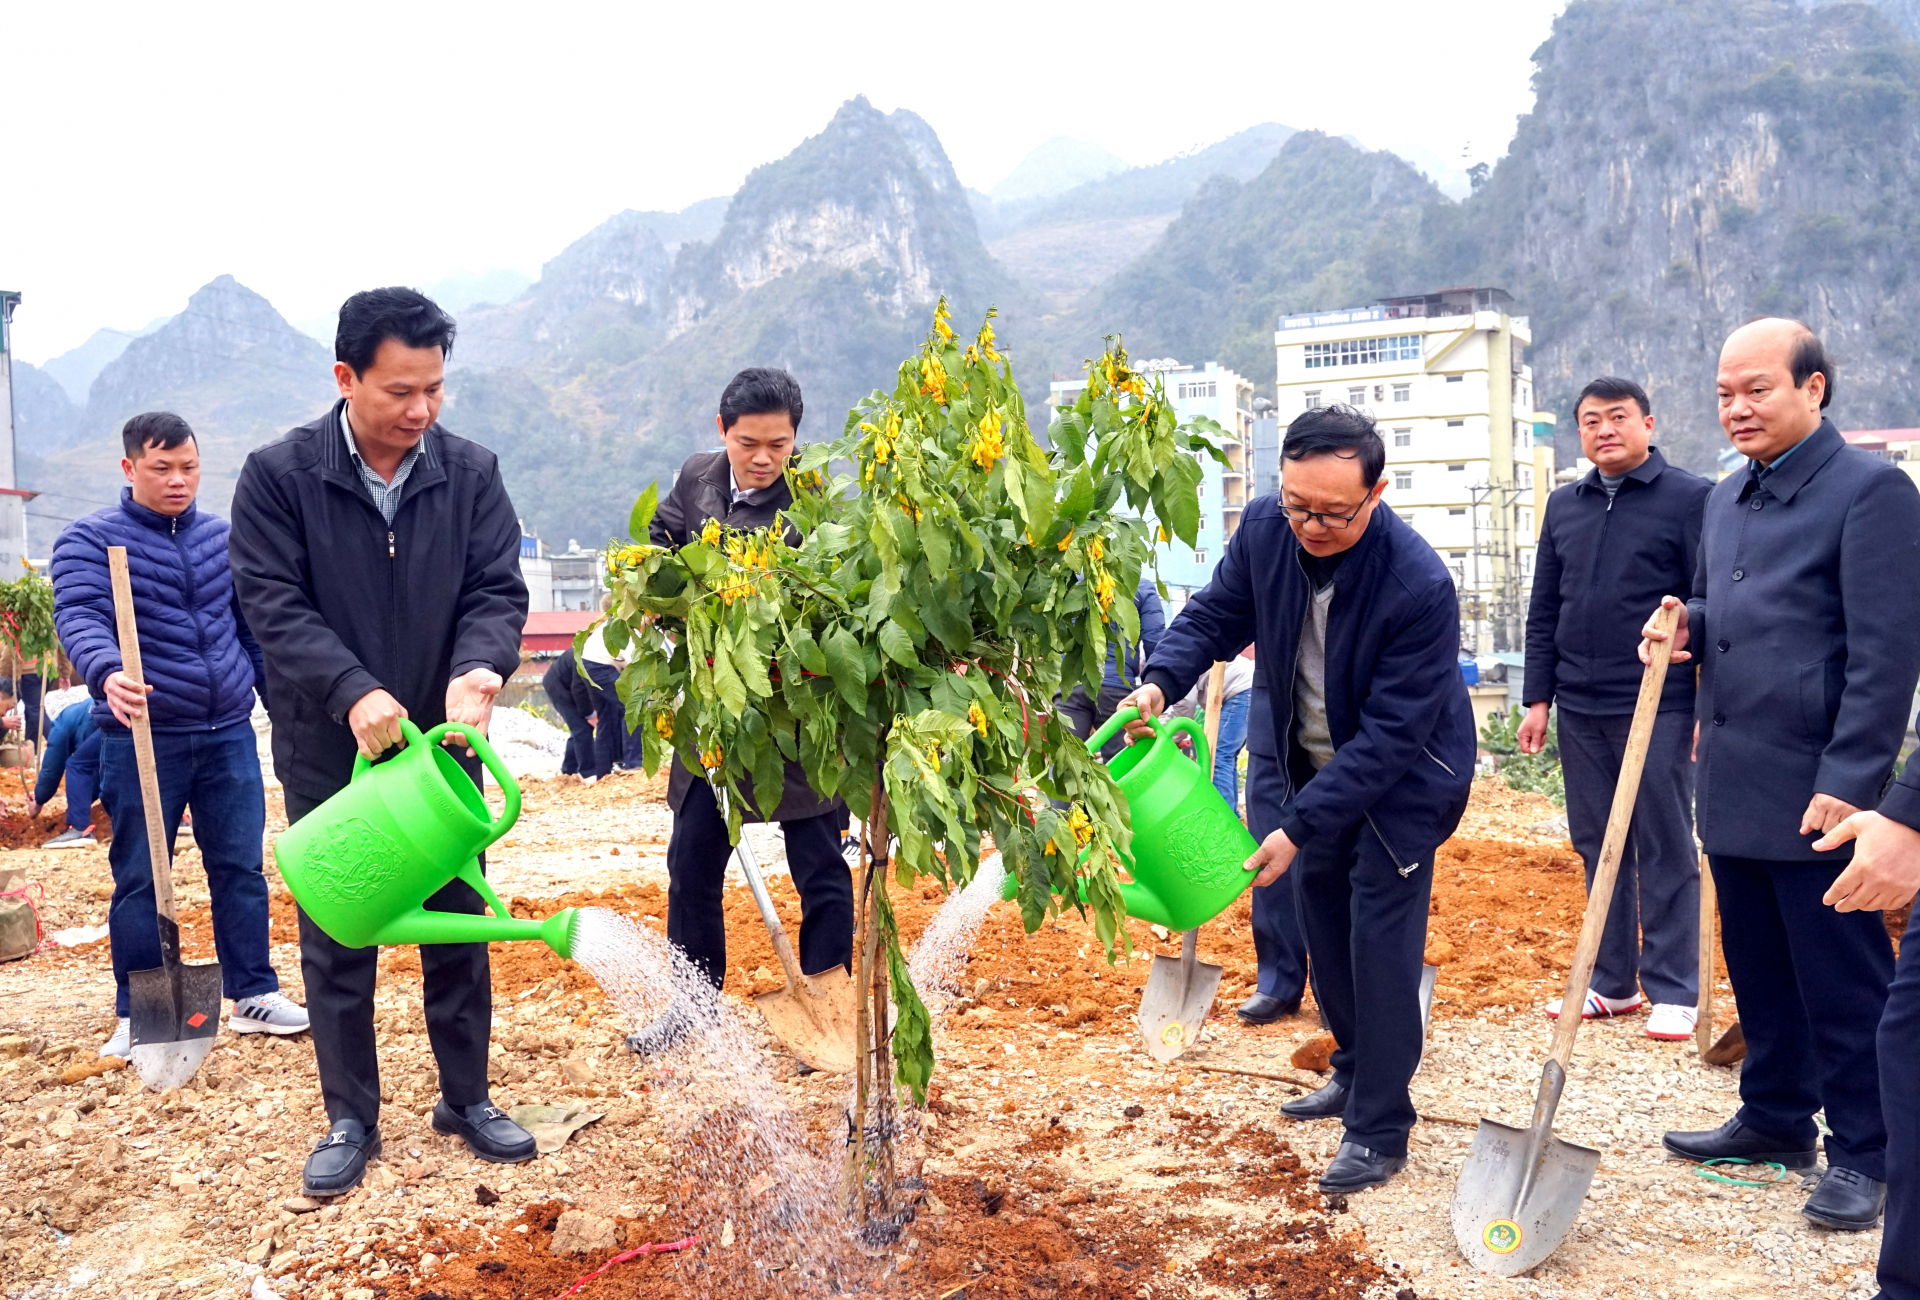 Bí thư Tỉnh ủy Đặng Quốc Khánh và các đồng chí lãnh đạo tỉnh cùng đoàn công tác trồng cây tại thị trấn Đồng Văn.
